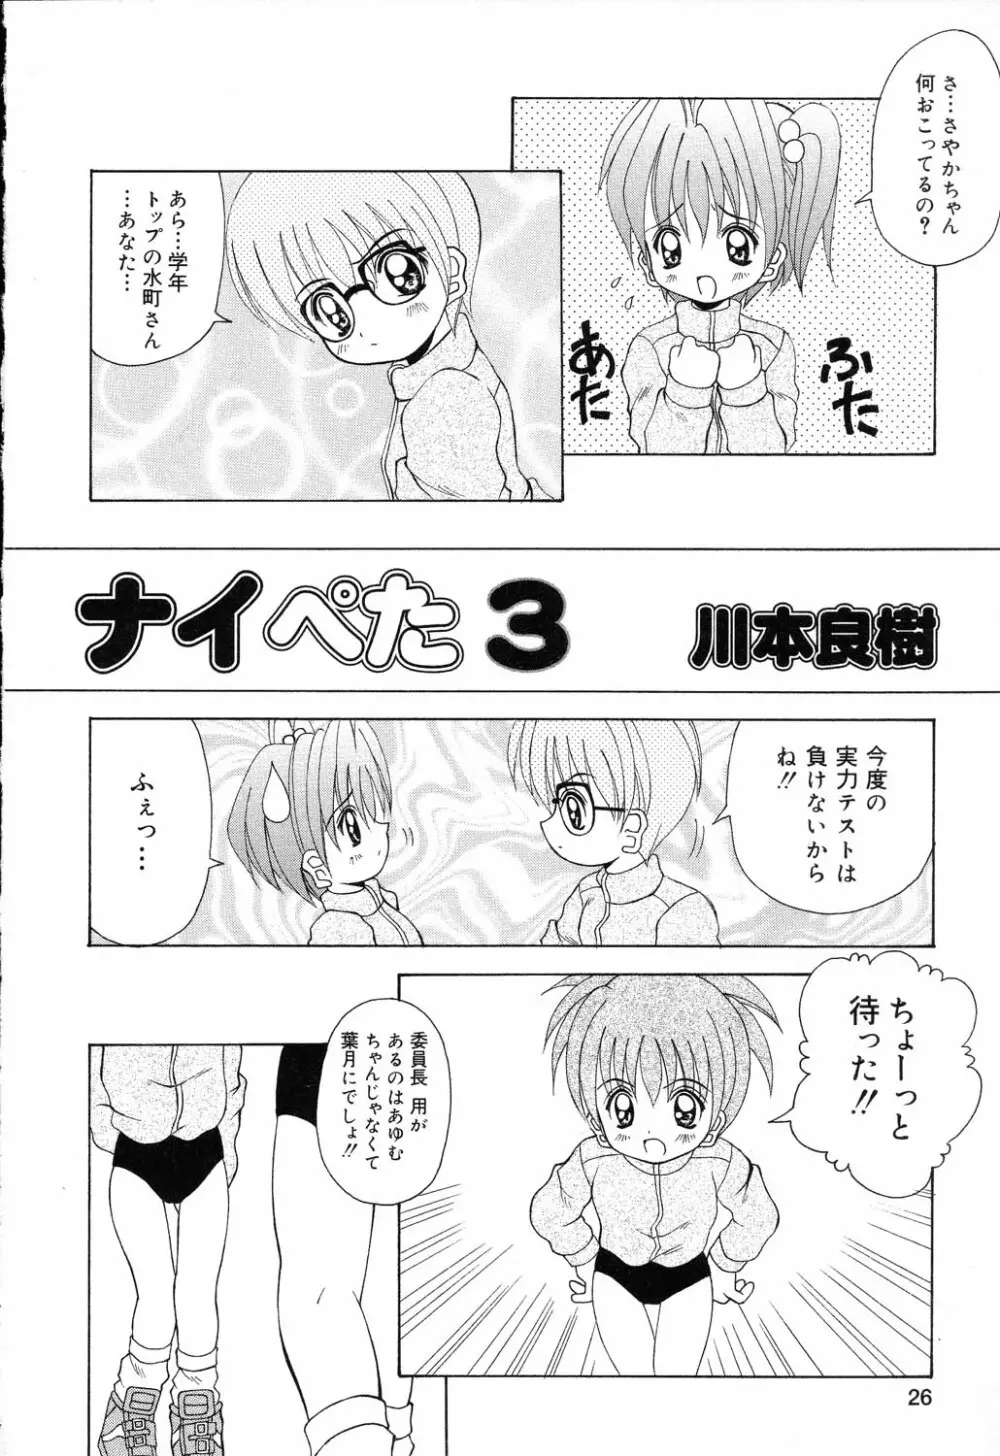 ぴゅあぷちっと Vol.19 魔女っ娘特集 27ページ